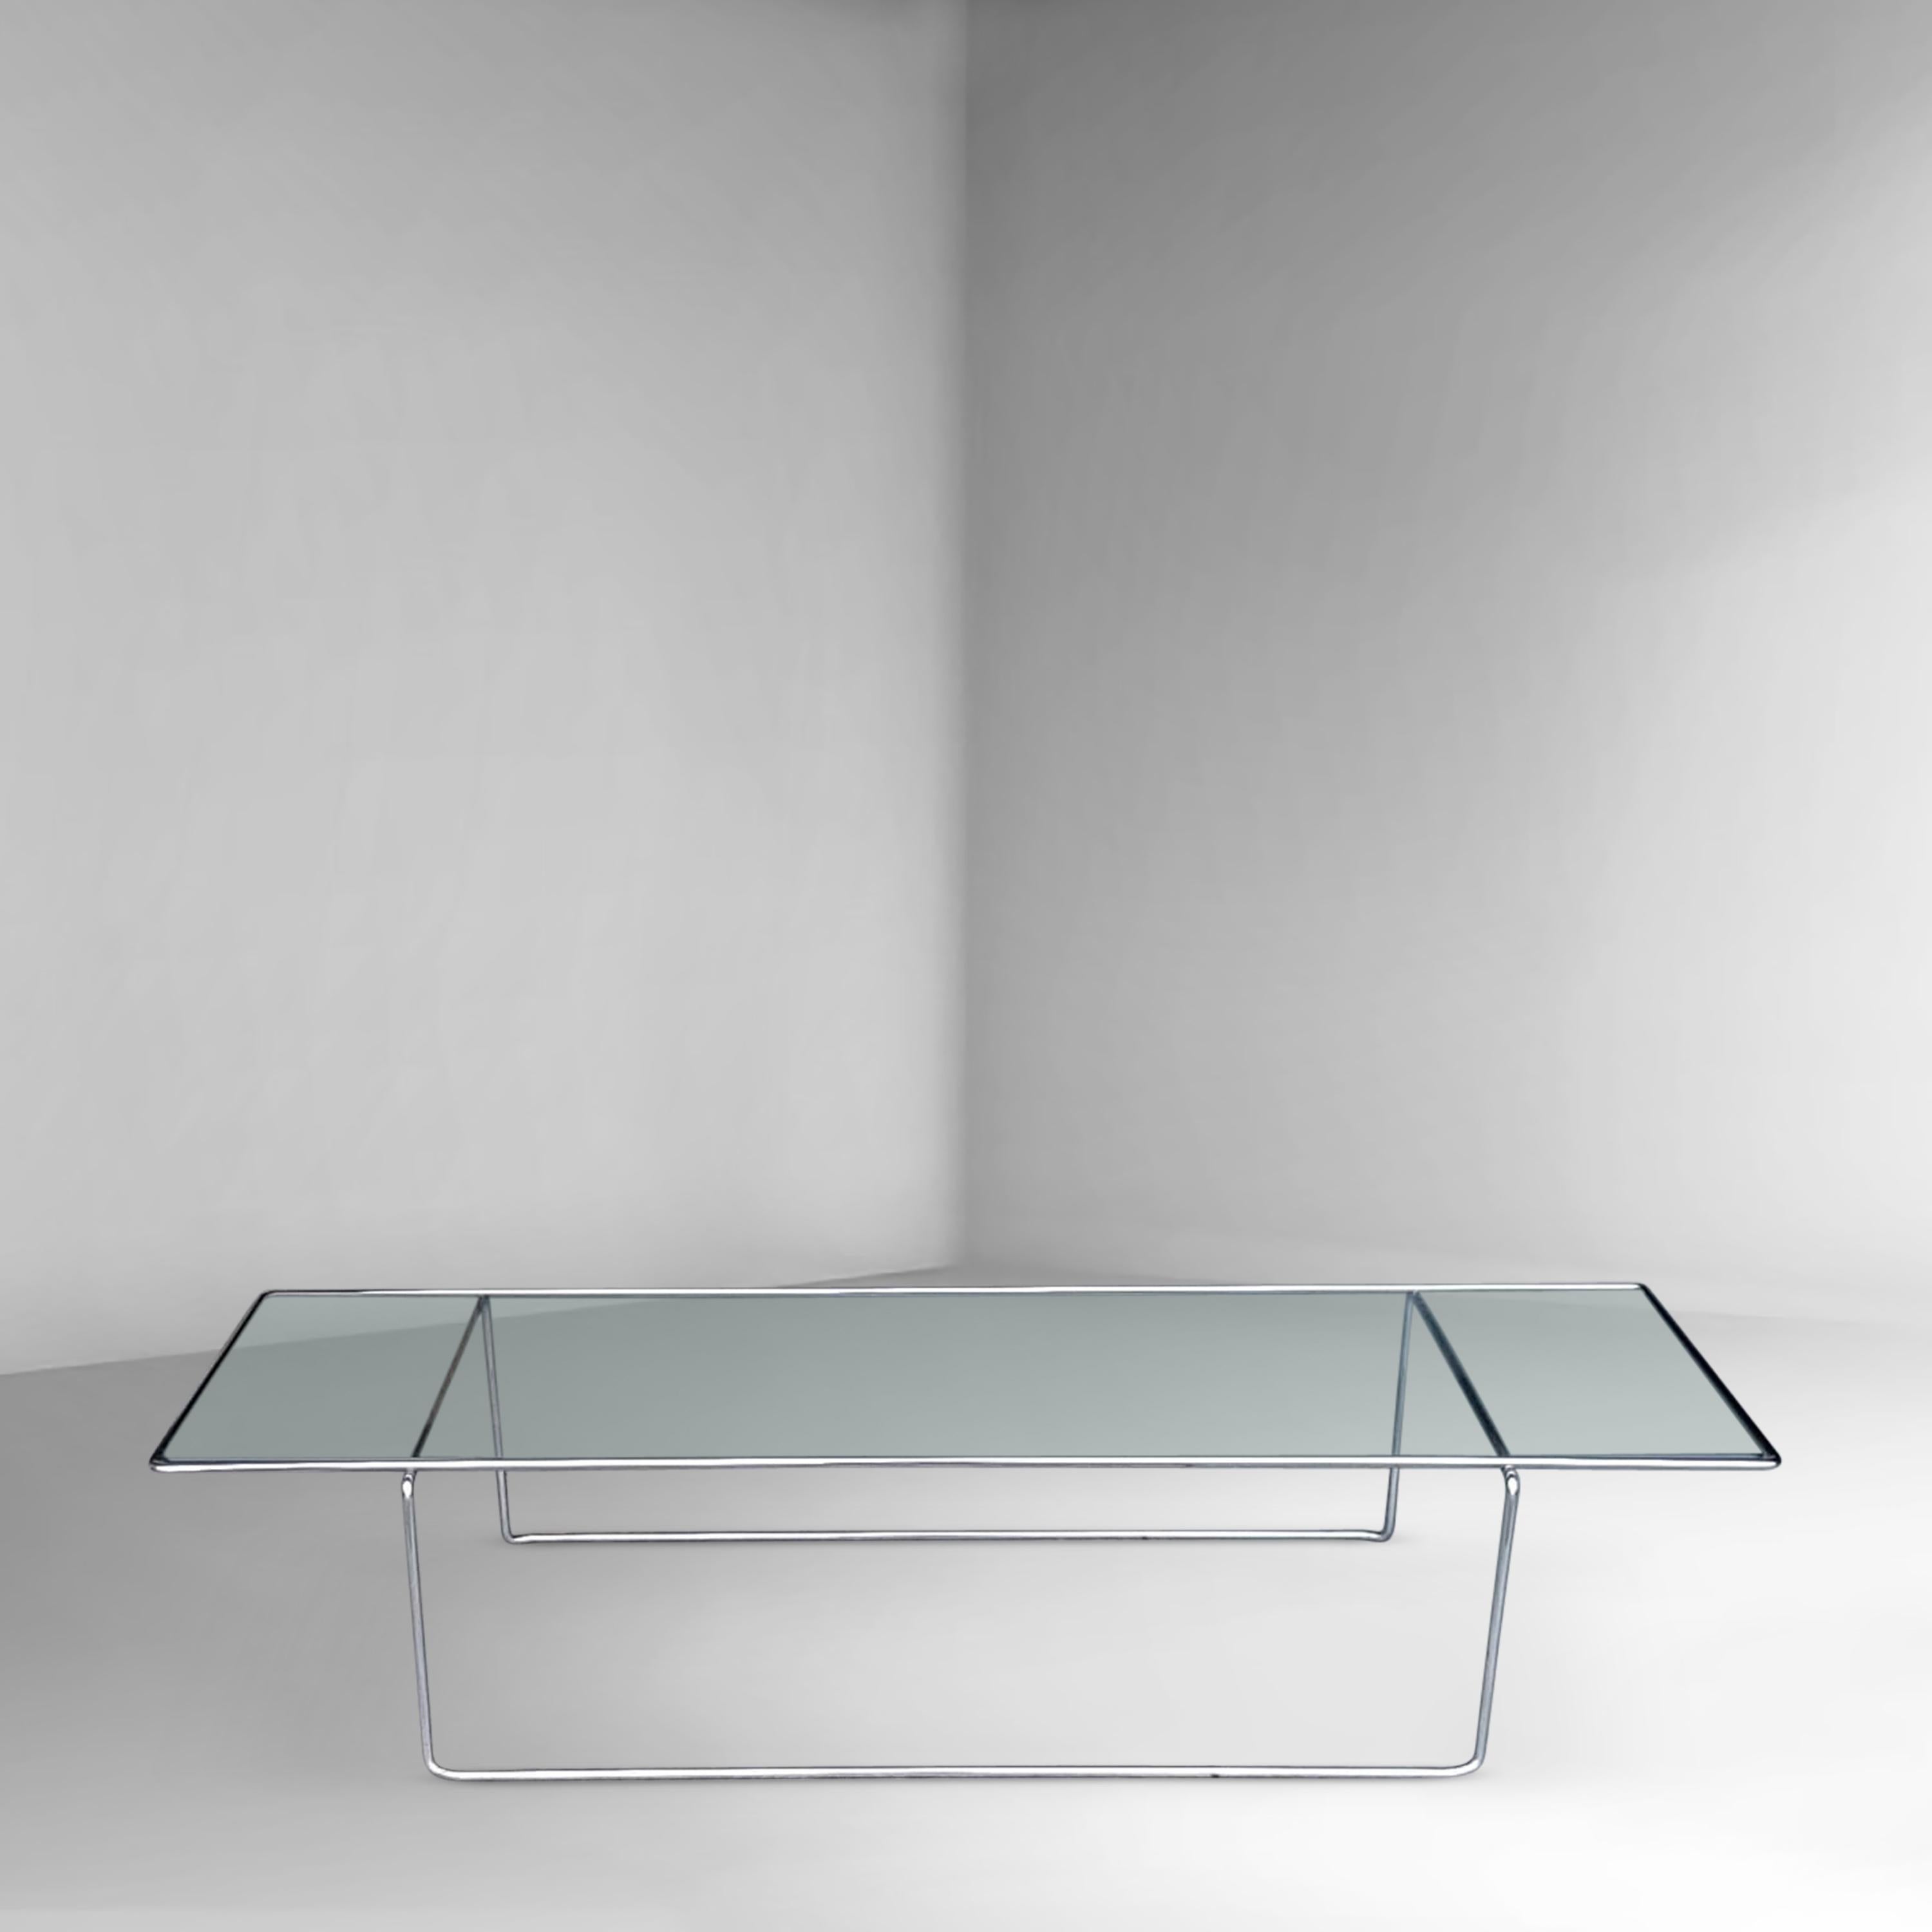 Table basse au design minimaliste, inspirée par Mies van der Rohe avec des lignes abstraites simples. Le cadre inférieur et le cadre supérieur en métal sont en acier plié et se composent d'une seule pièce. L'ensemble du design est très élégant grâce